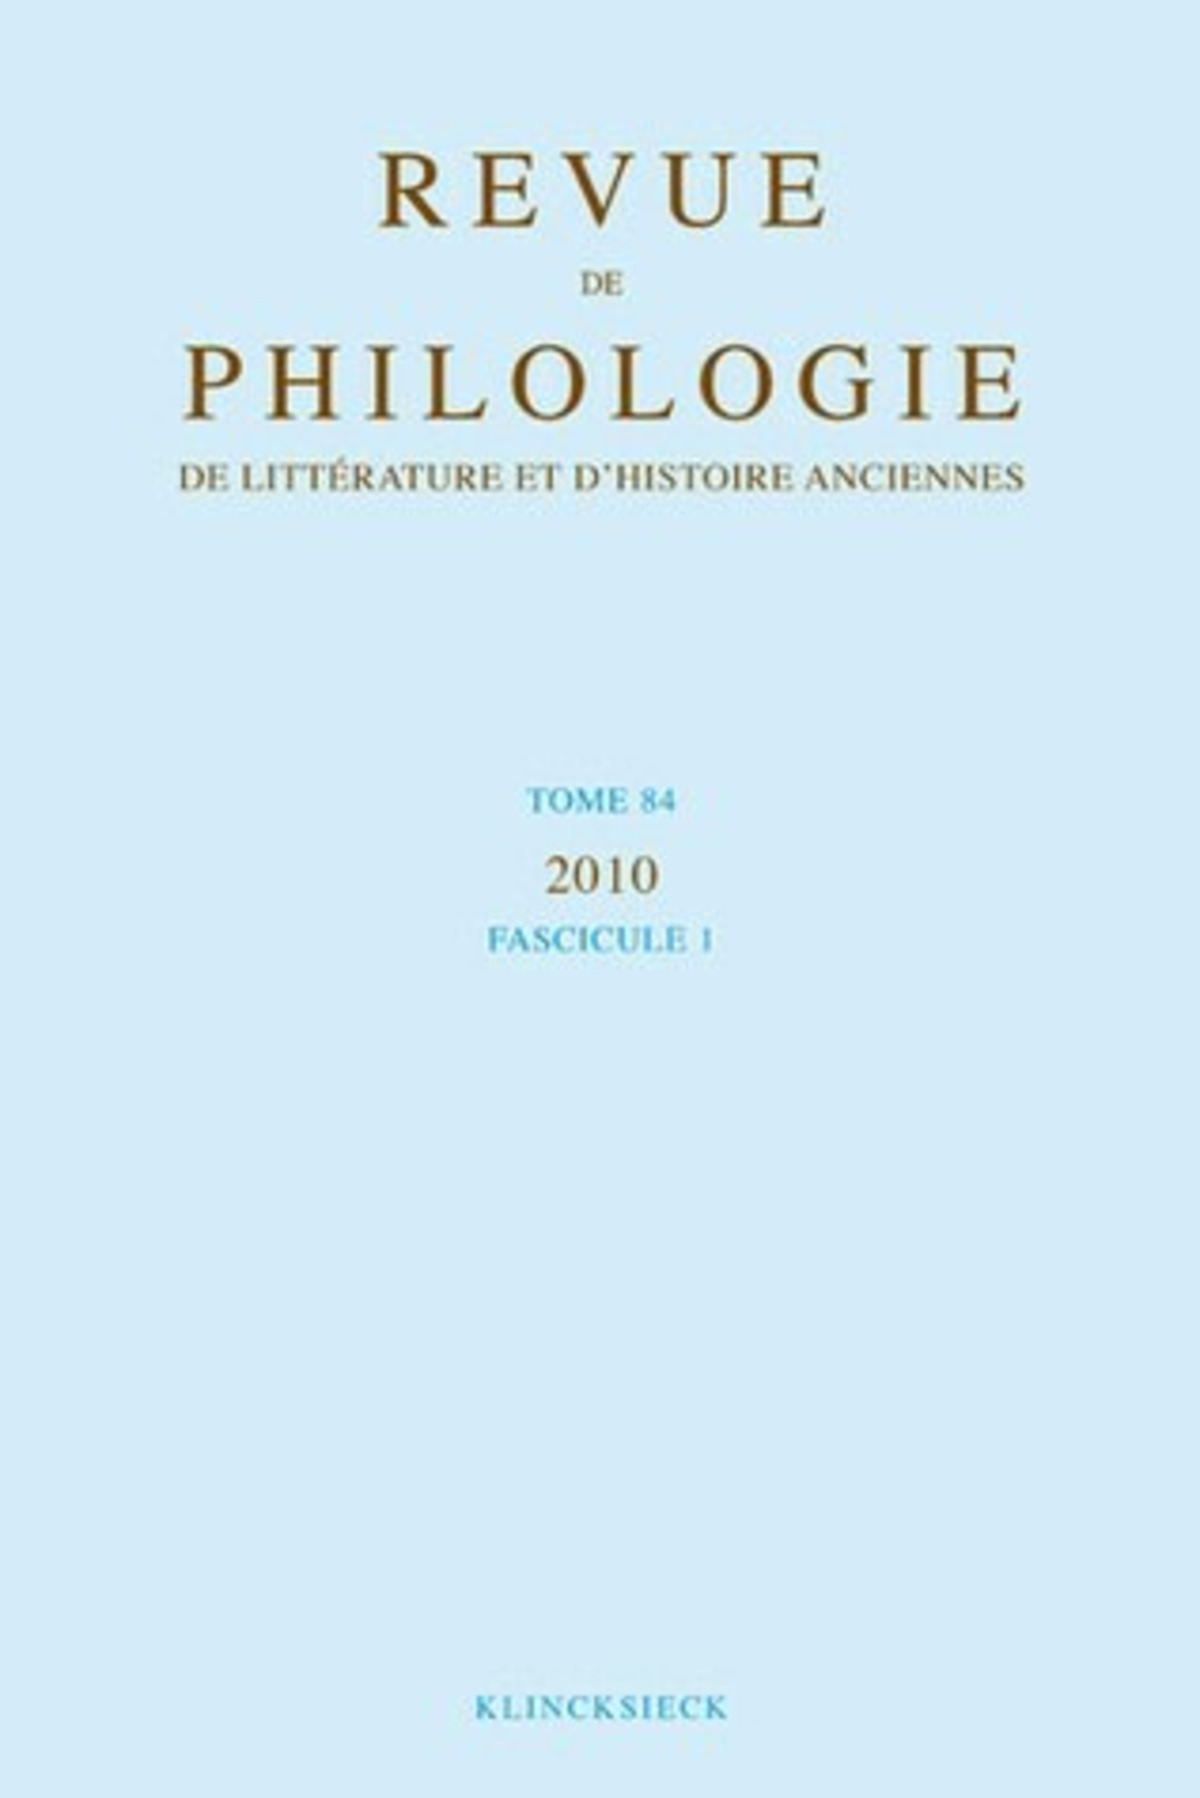 Revue de philologie, de littérature et d'histoire anciennes volume 84